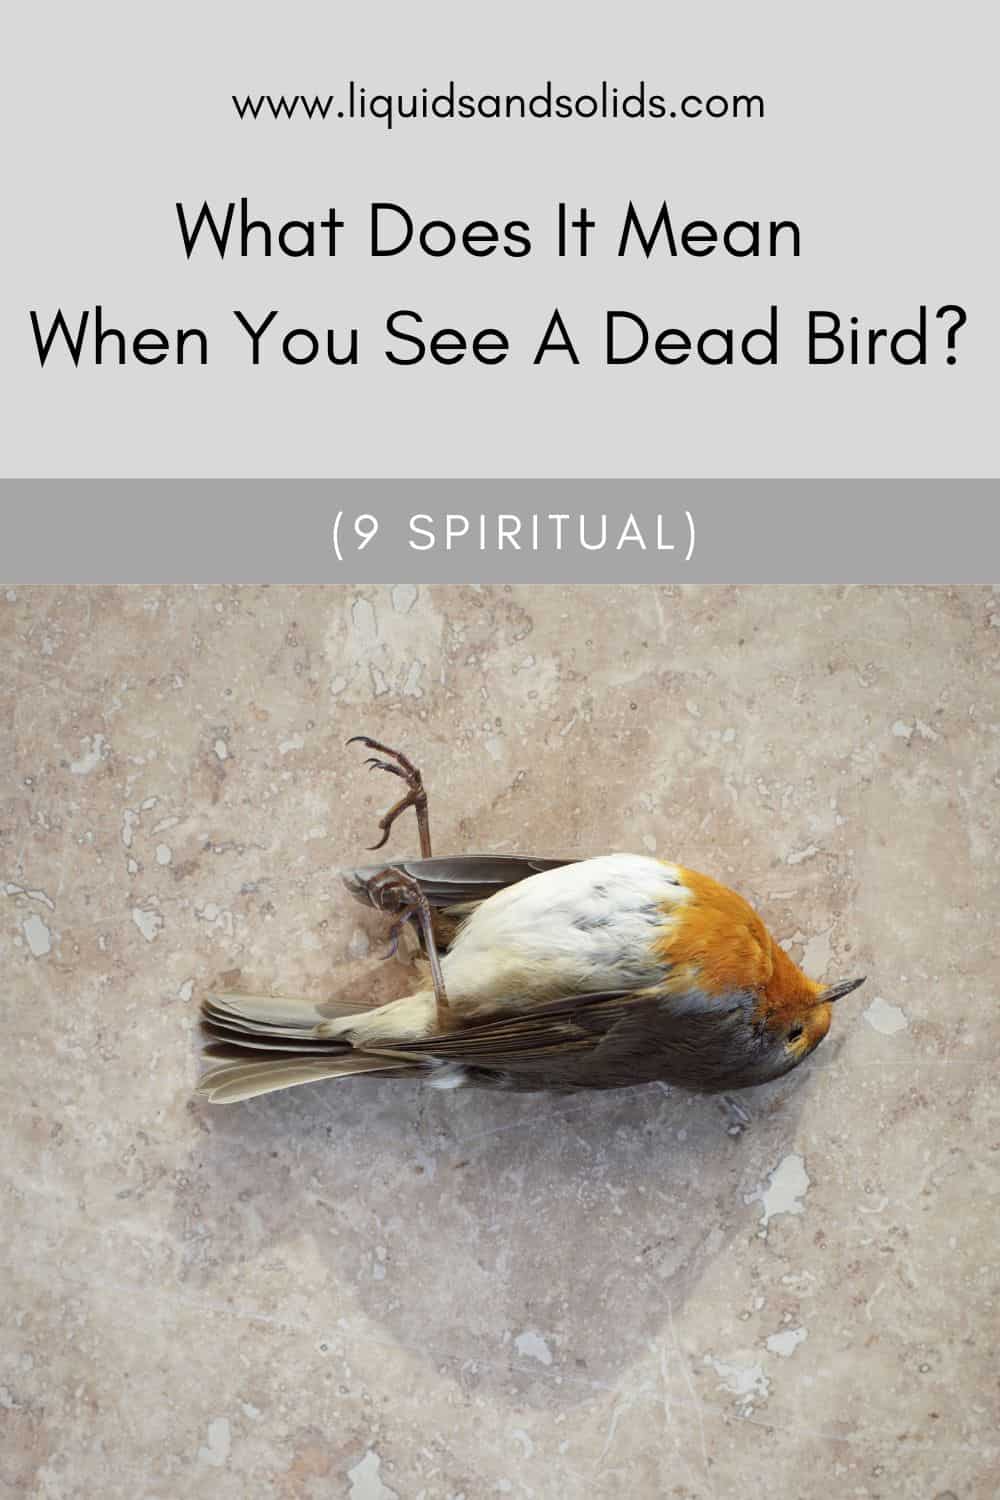  Ce que signifie voir un oiseau mort (9 significations spirituelles)